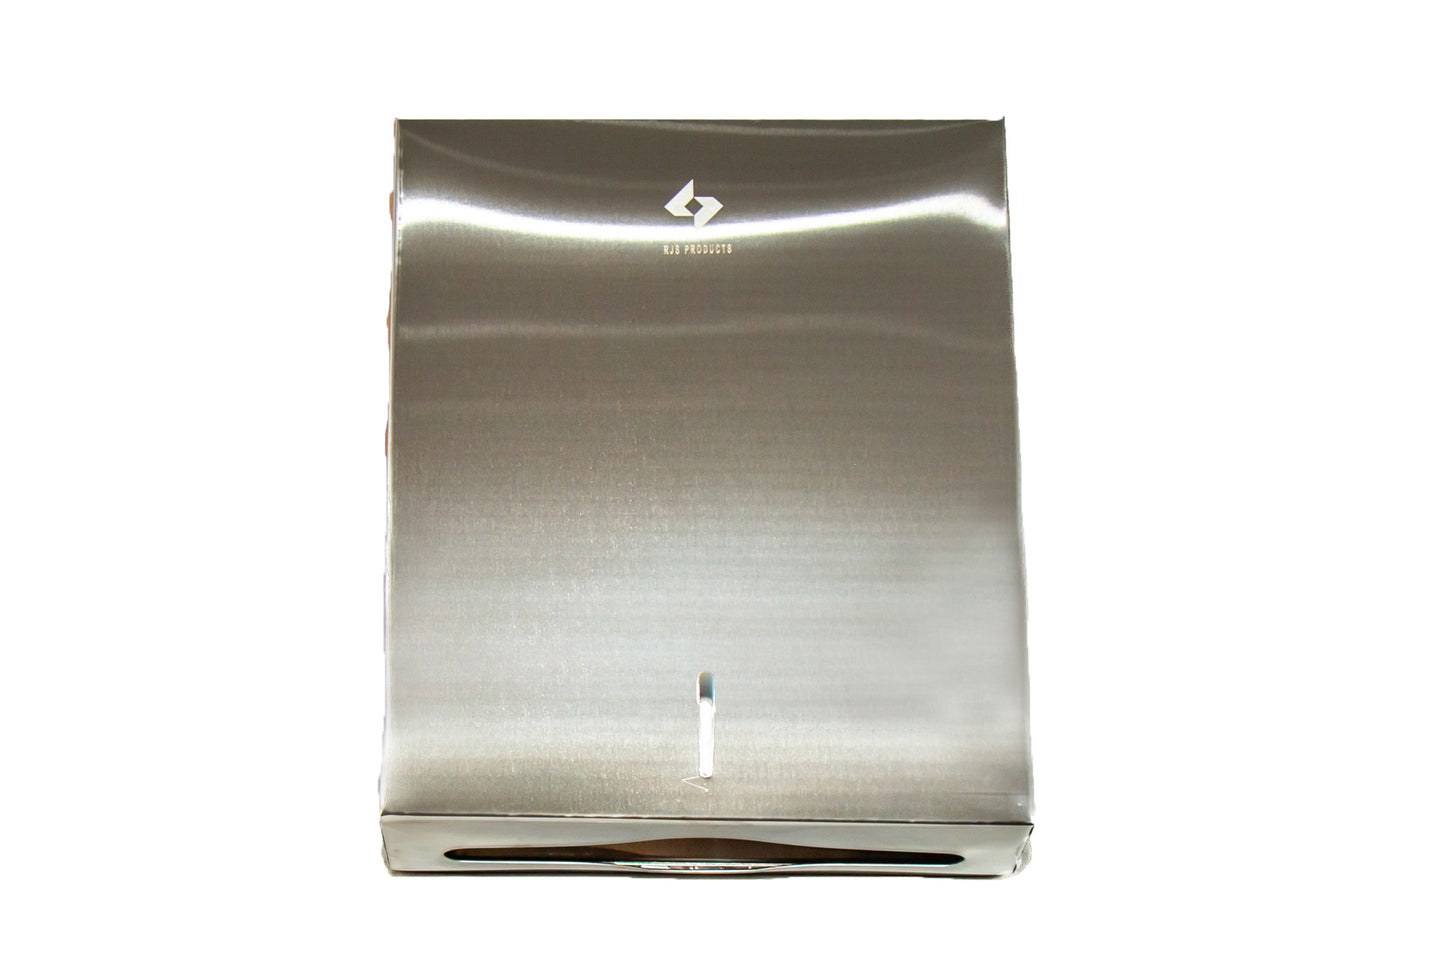 RJS Interleave Hand Towel Dispenser(stainless steel)